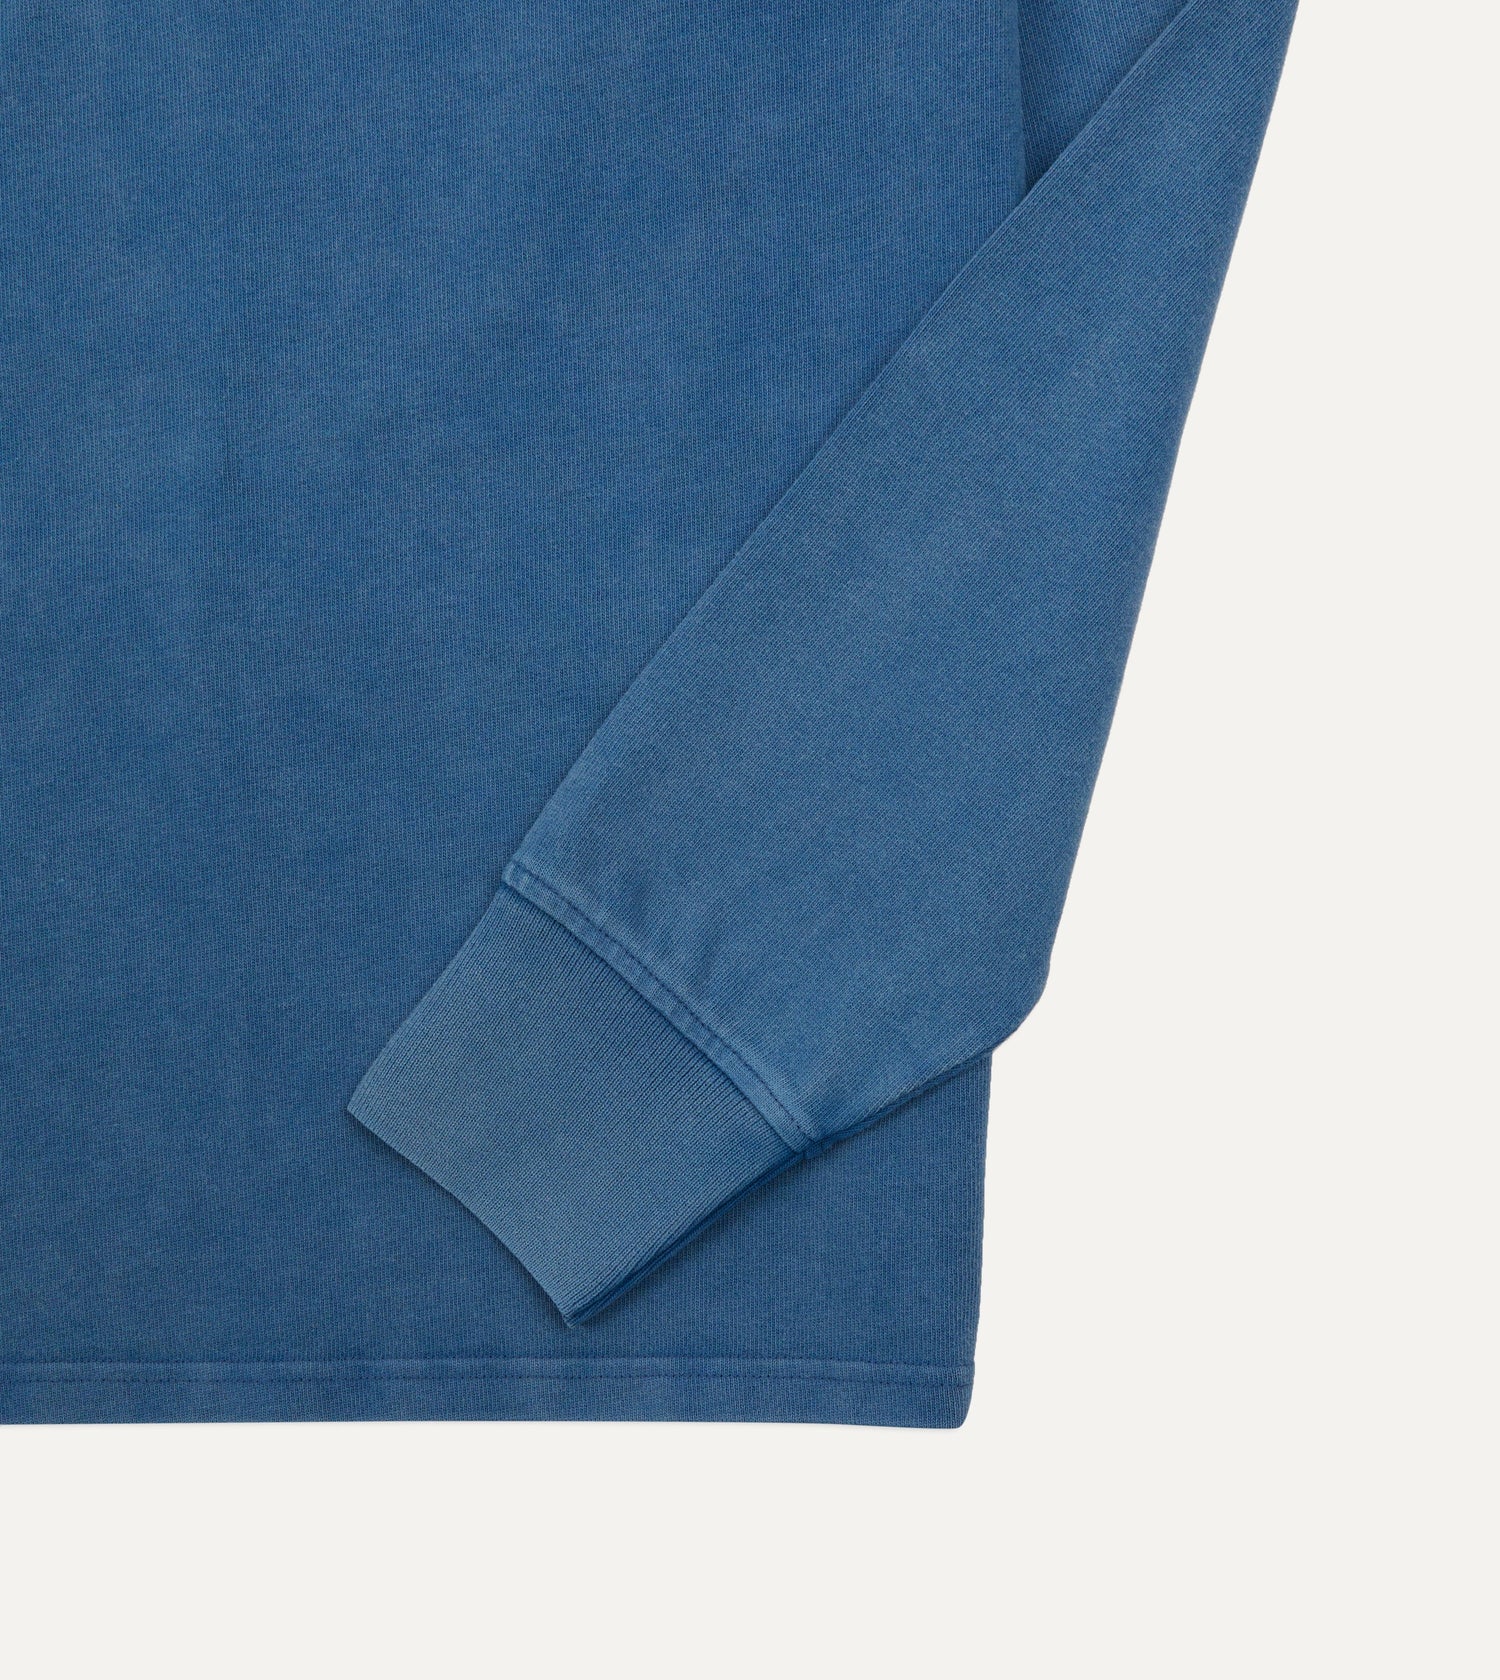 Indigo Cotton Jersey Long-Sleeve Polo Shirt